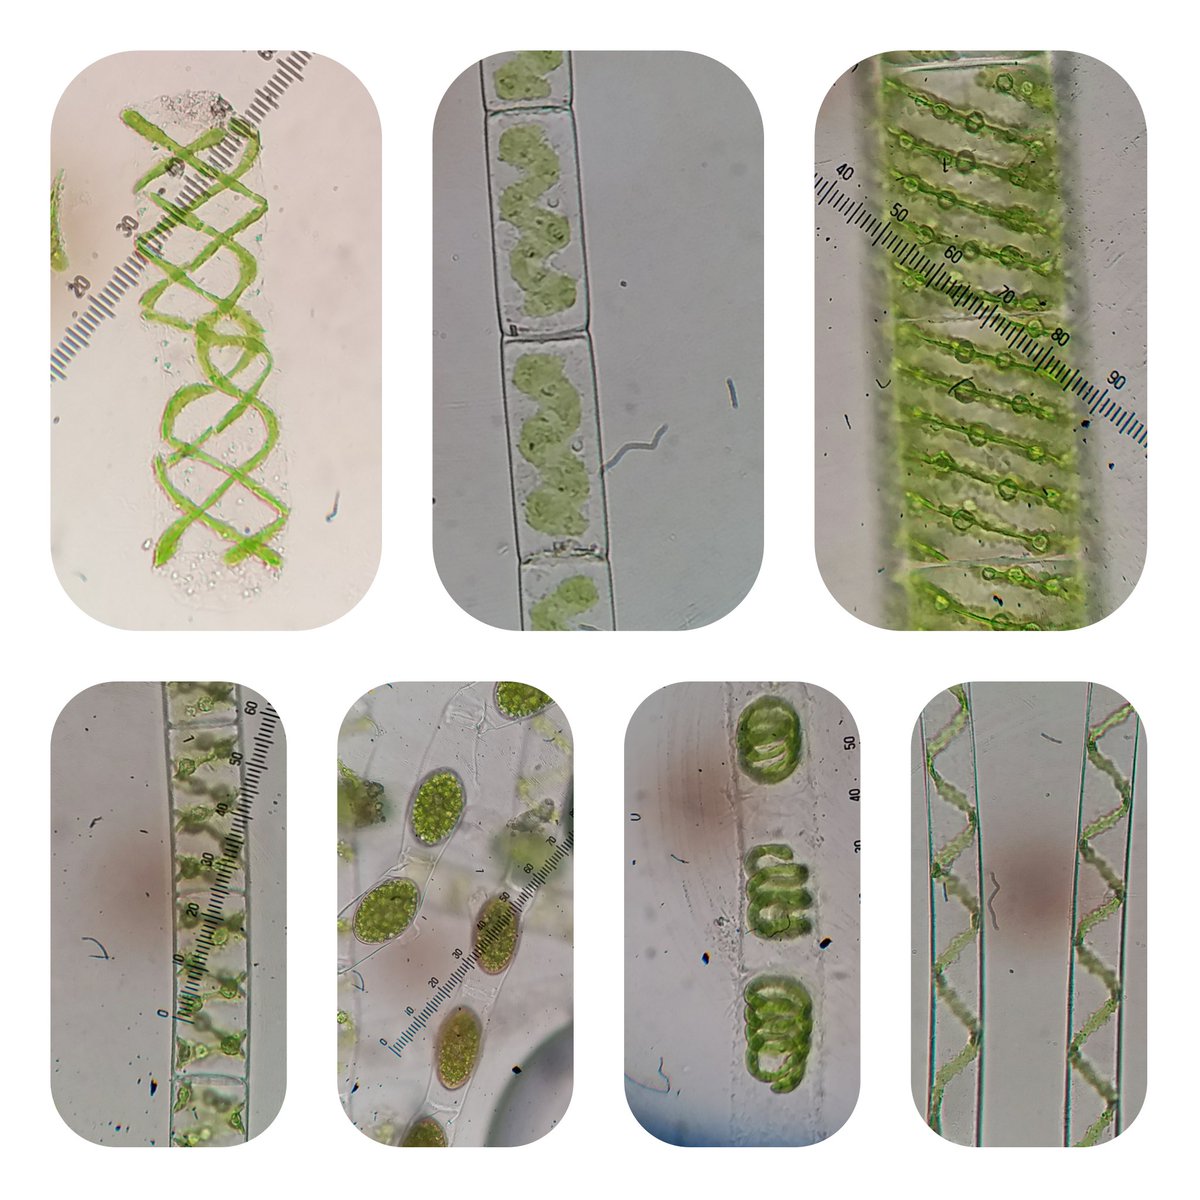 Variety of Fresh water Spirogyra with Distinct Chloroplasts!
#phycologyfriday 
#algae